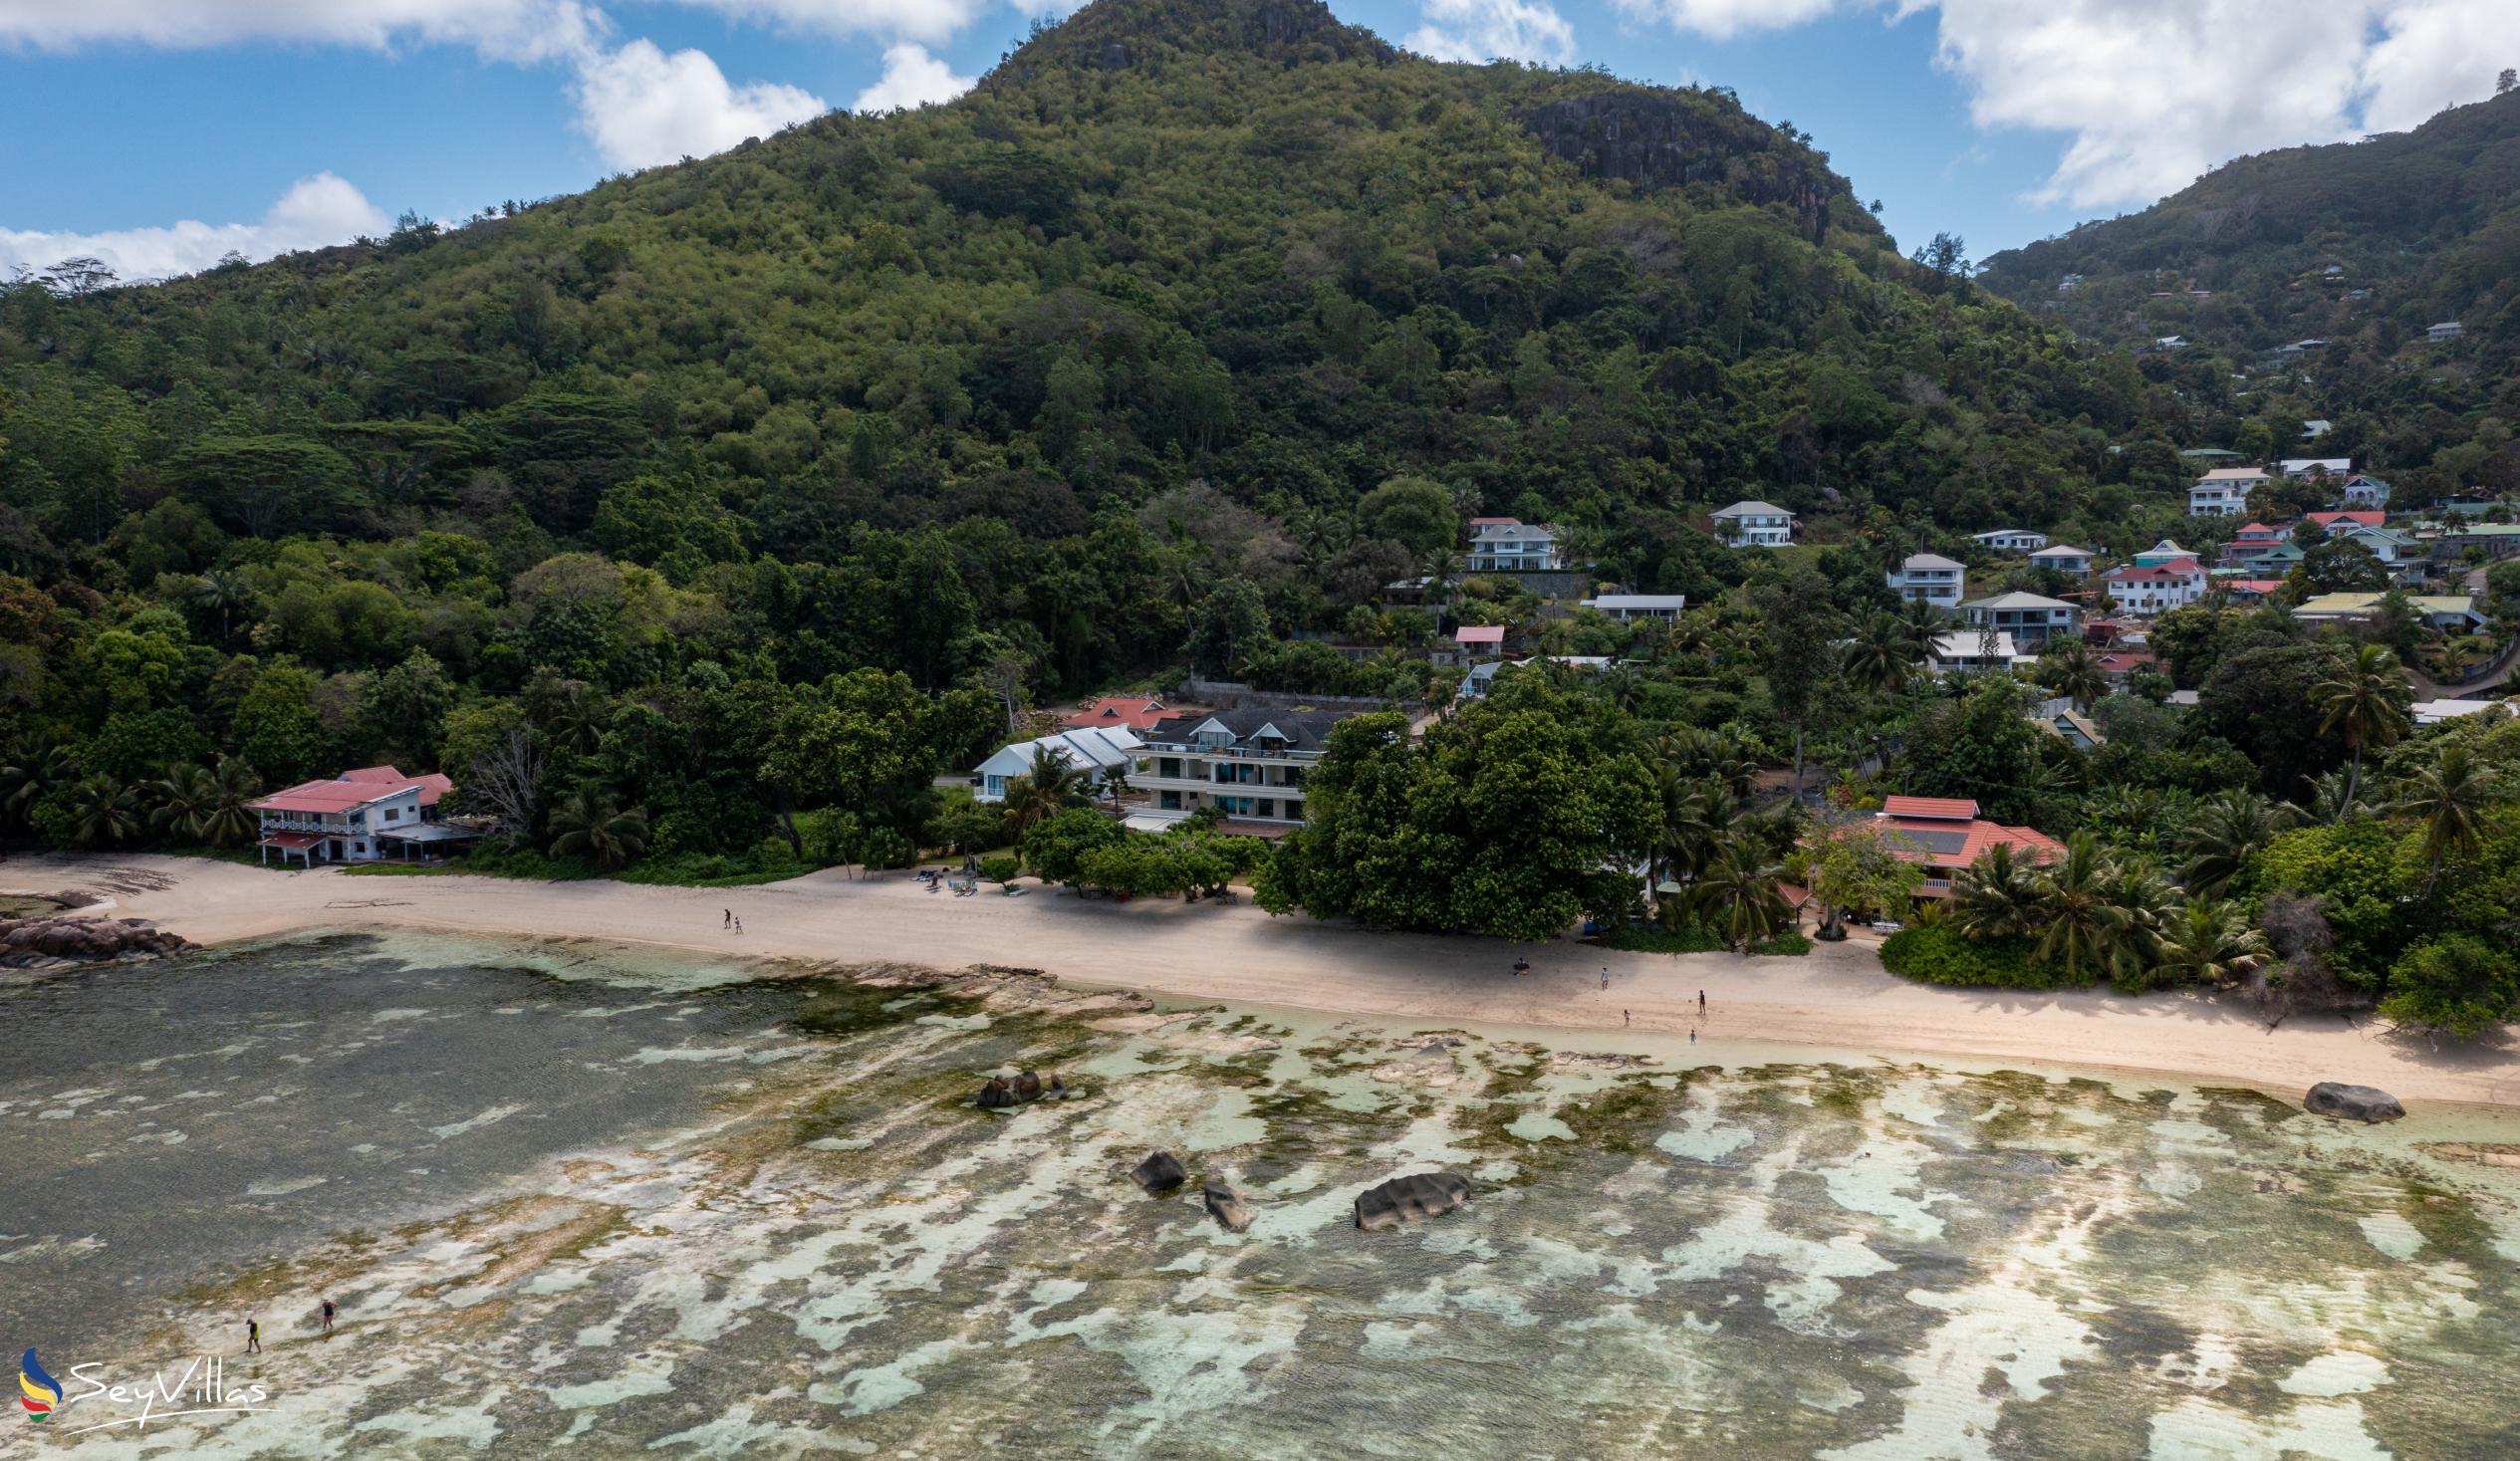 Foto 41: Villa Kordia - Posizione - Mahé (Seychelles)